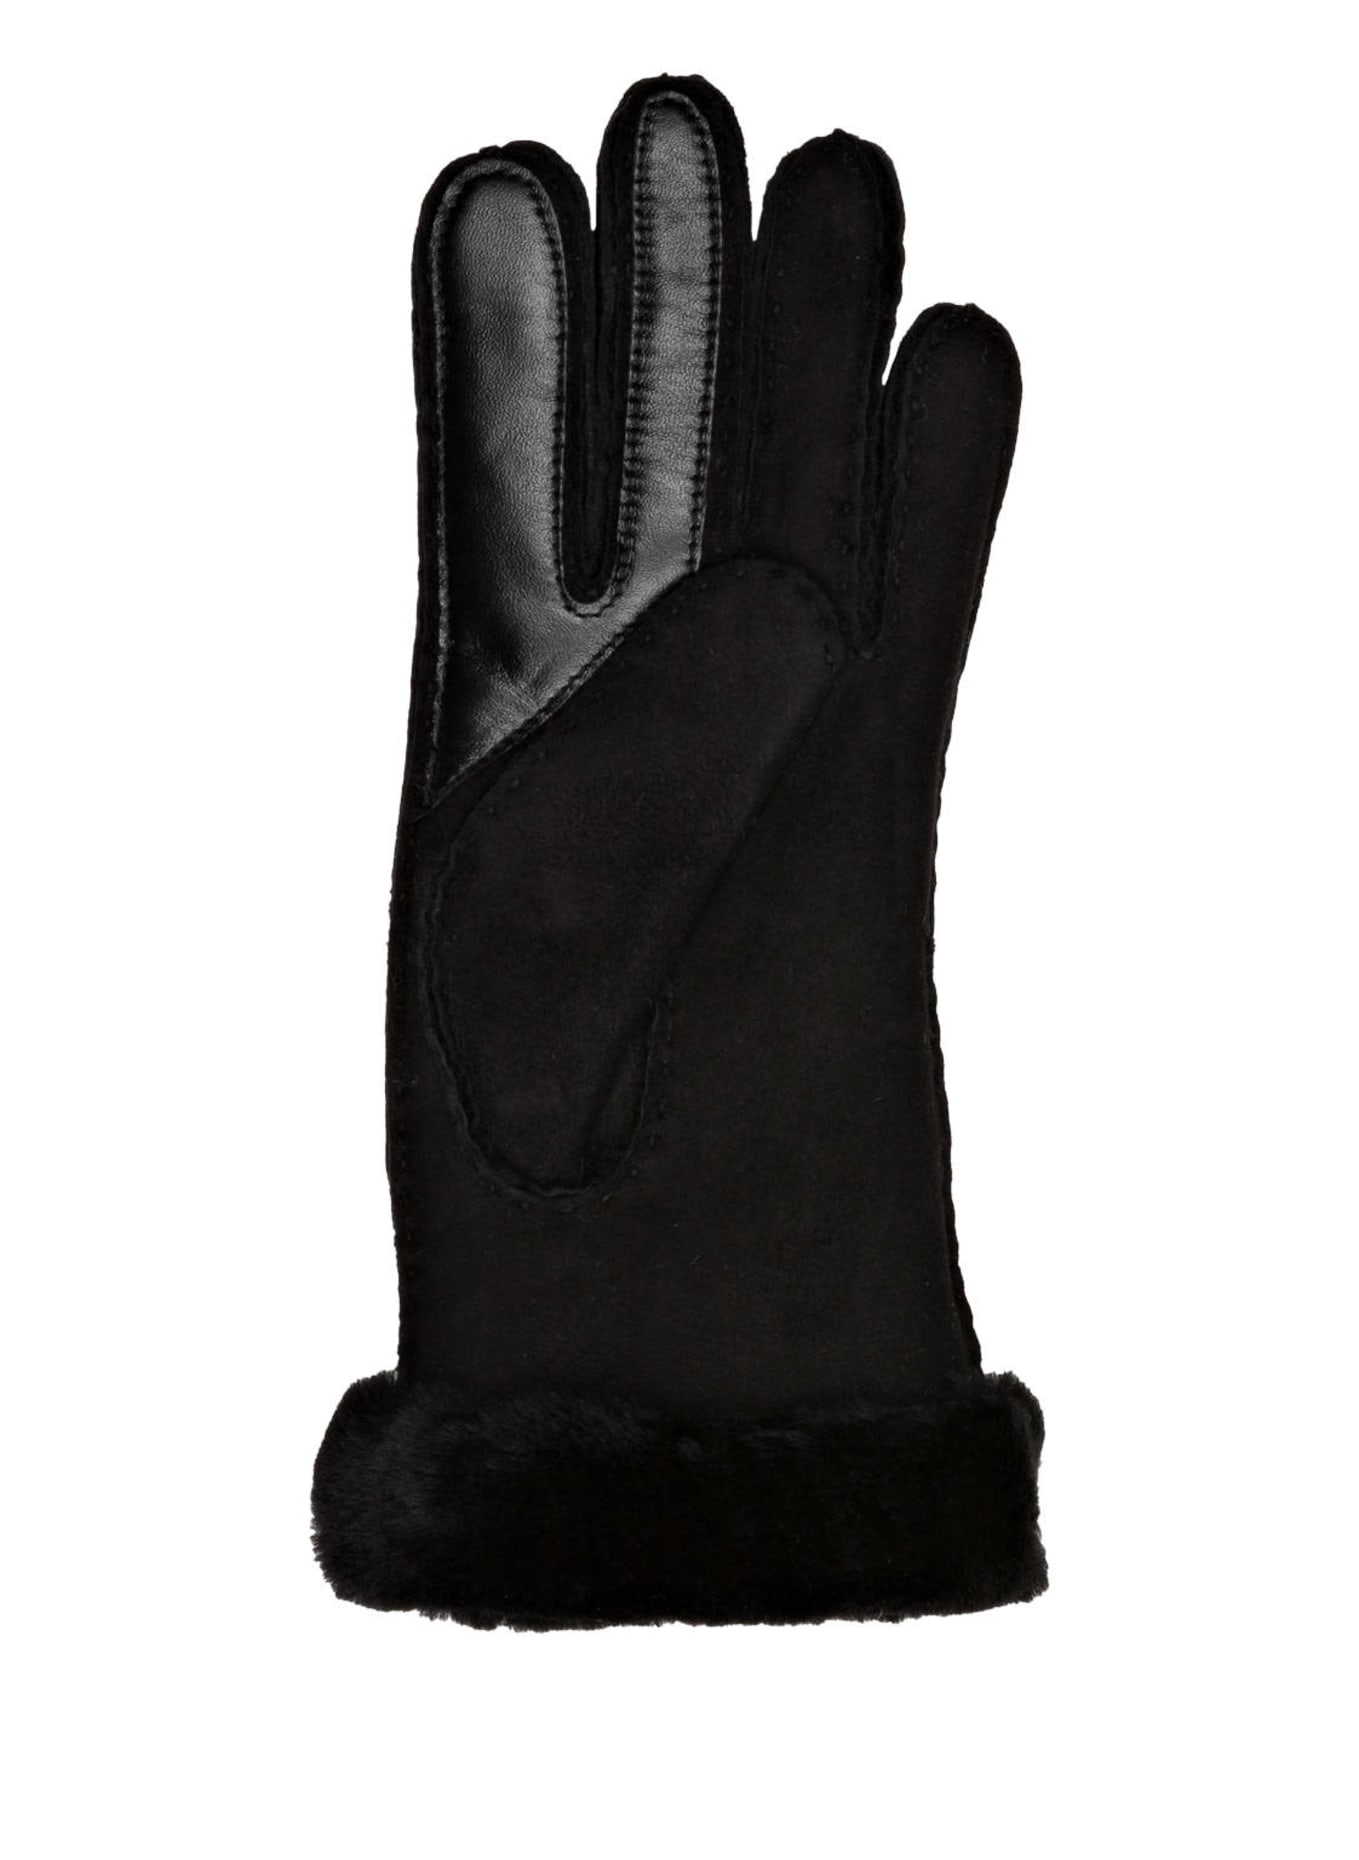 UGG Lederhandschuhe SEAMED TECH mit Echtfell und Touchscreen-Funktion, Farbe: SCHWARZ (Bild 2)